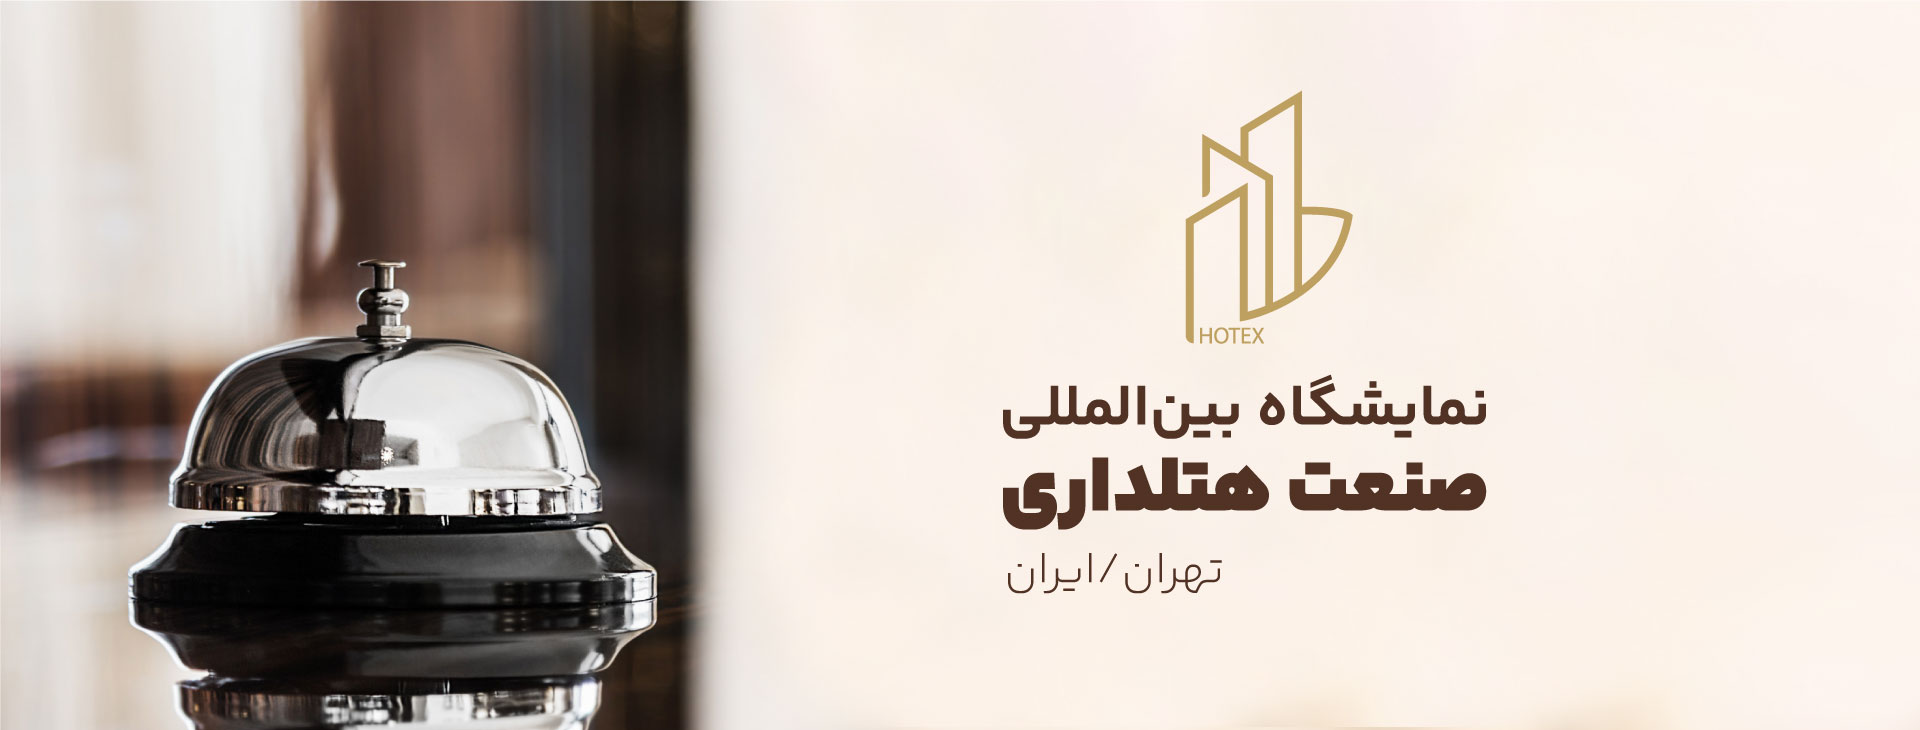 نمایشگاه بین المللی صنعت هتلداری تهران-ایران